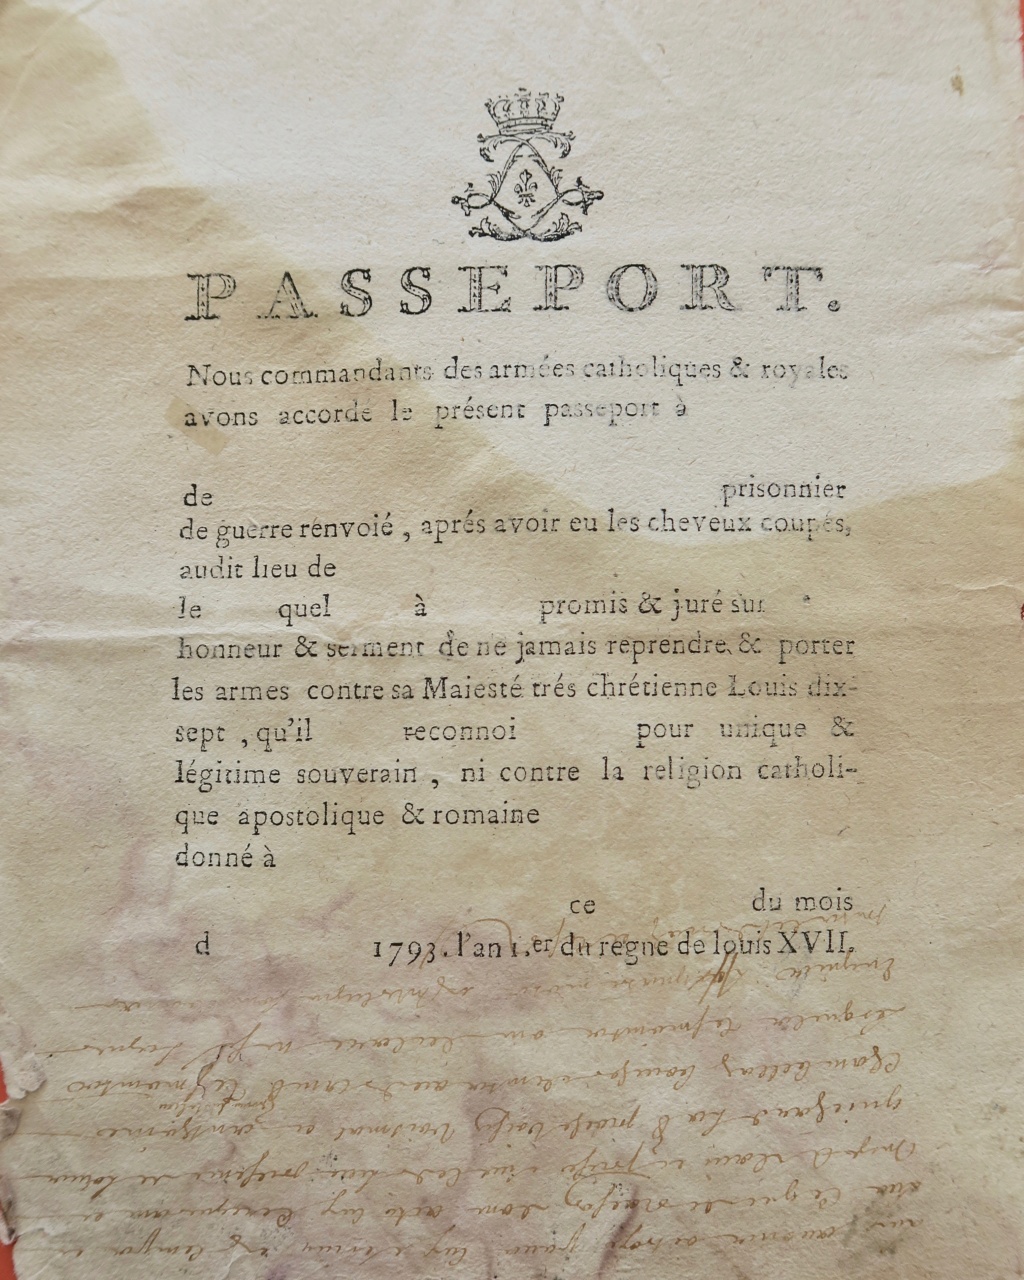 Passeport pour prisonnier de guerre - improbable Img_0826